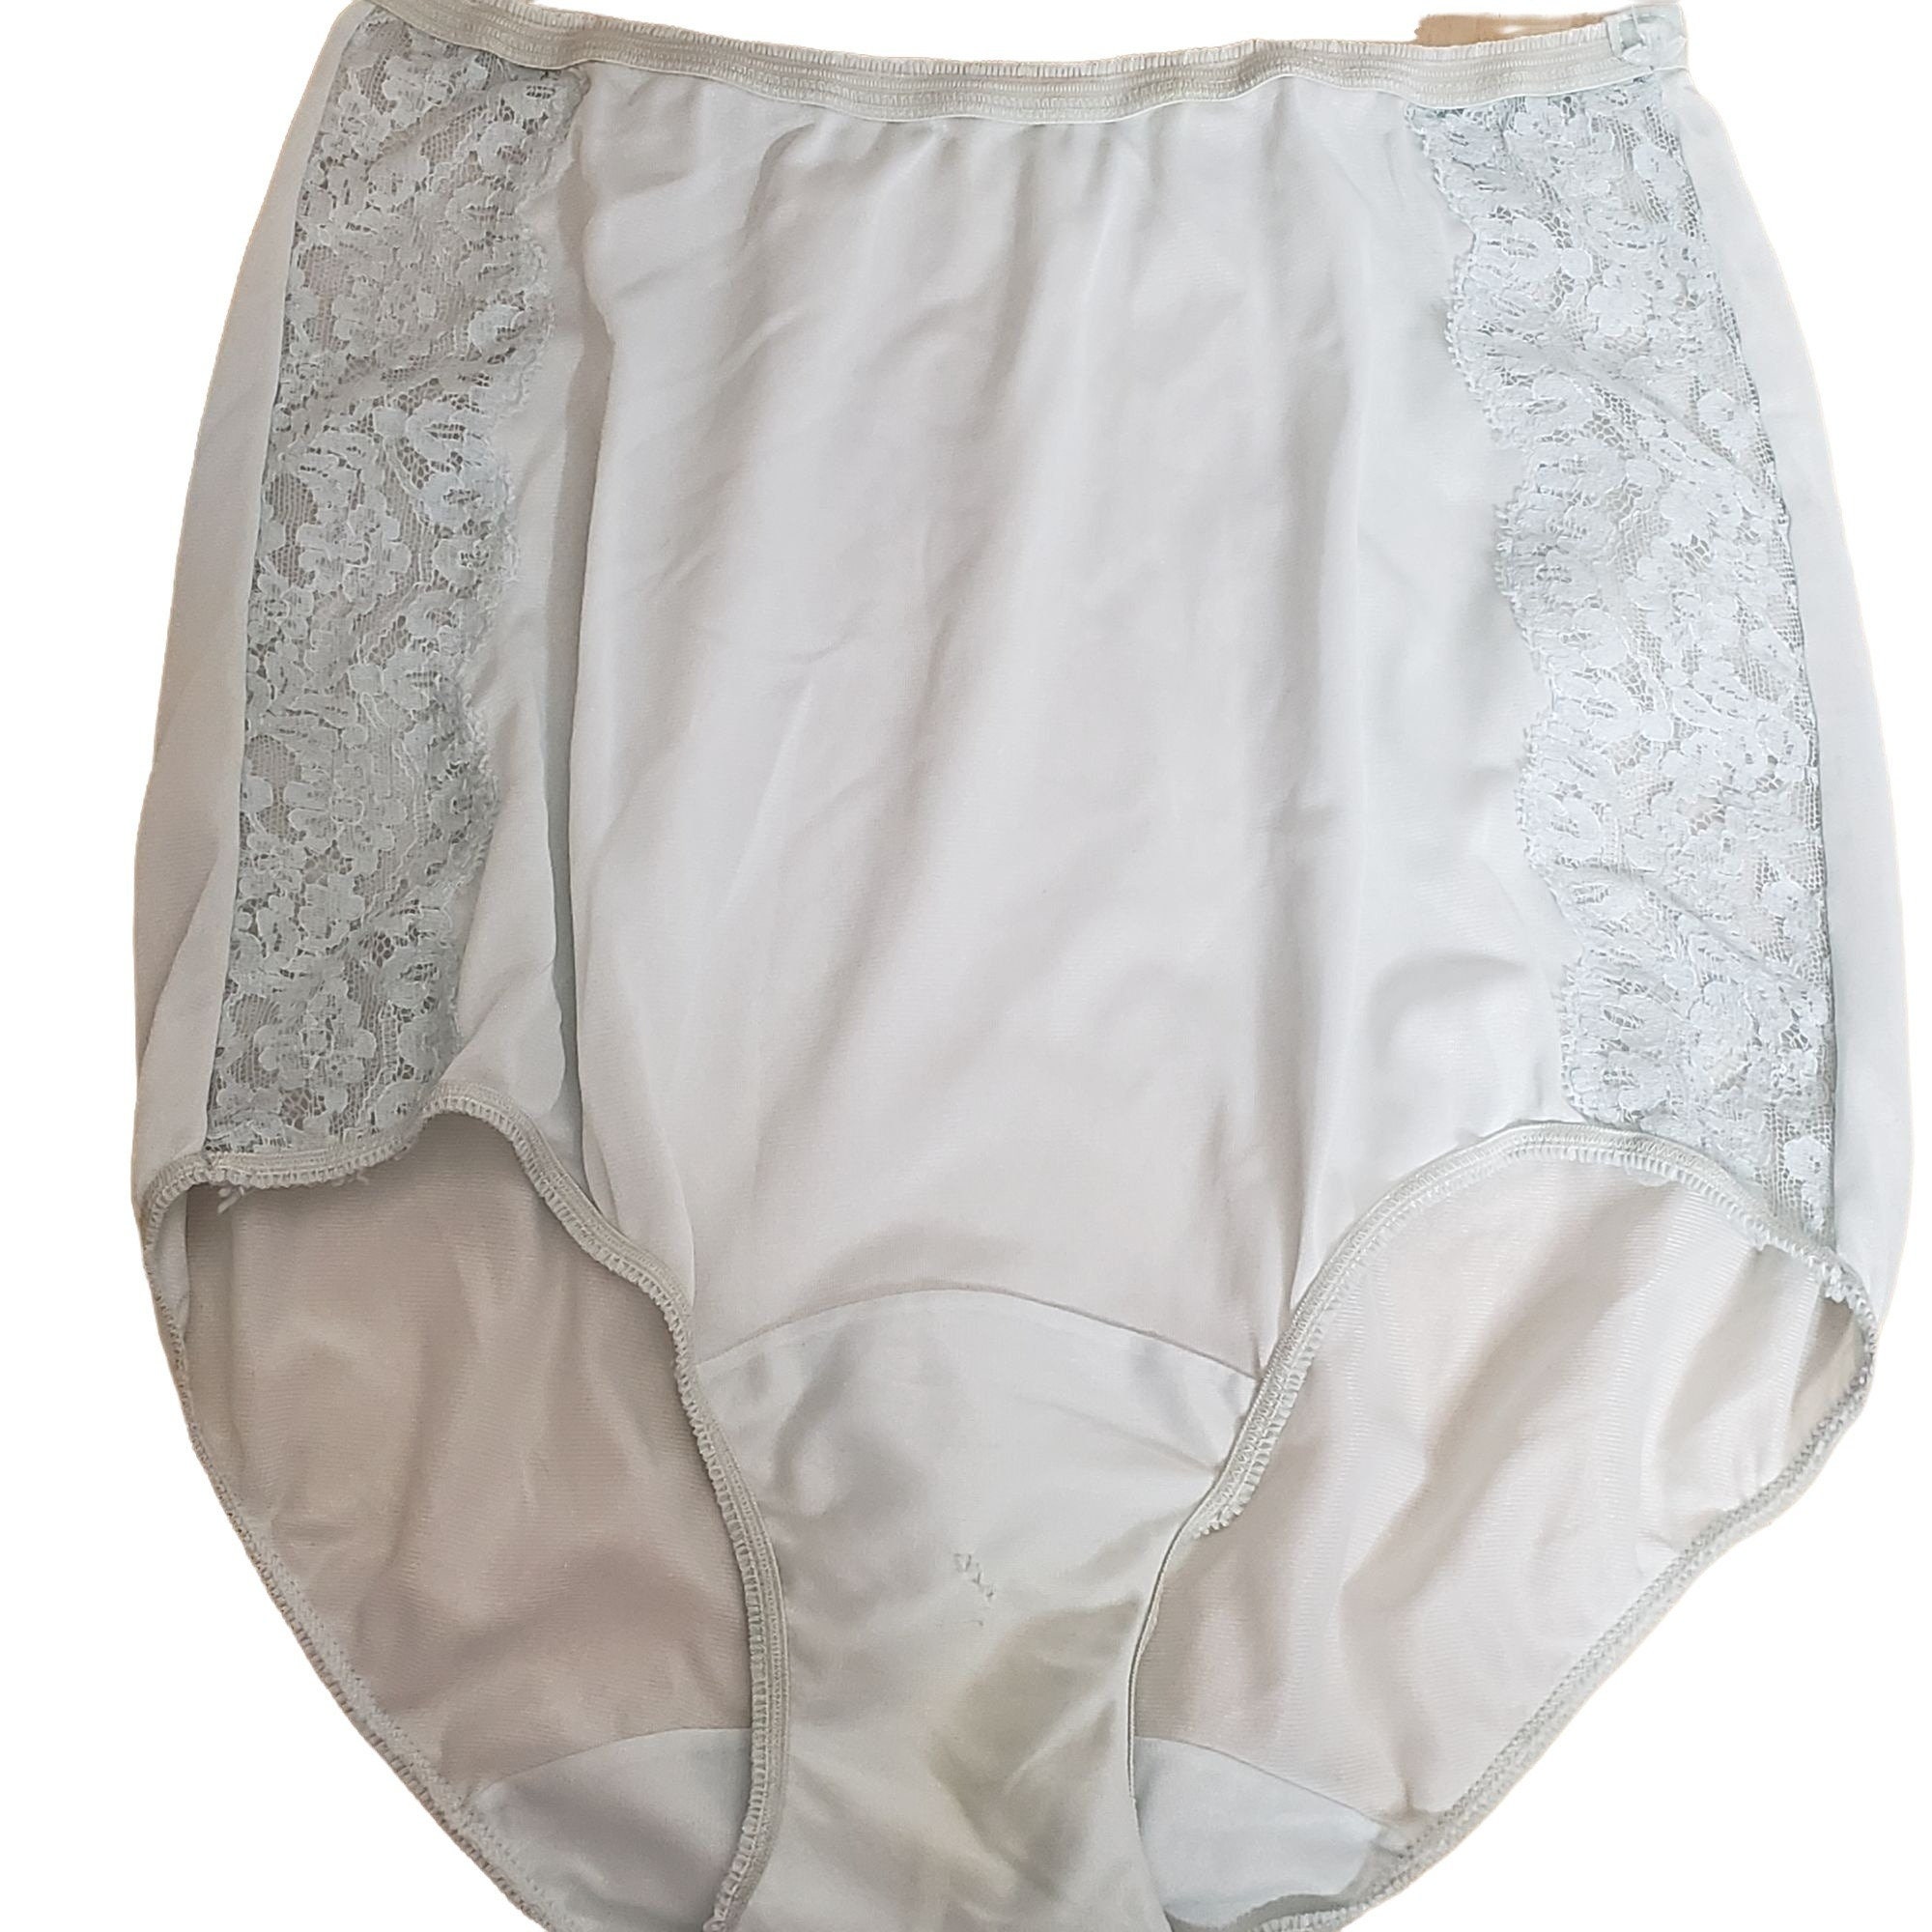 Vintage Hollywood Vassarette Nylon Tricot Briefs Panties Pale Blue Size 4 